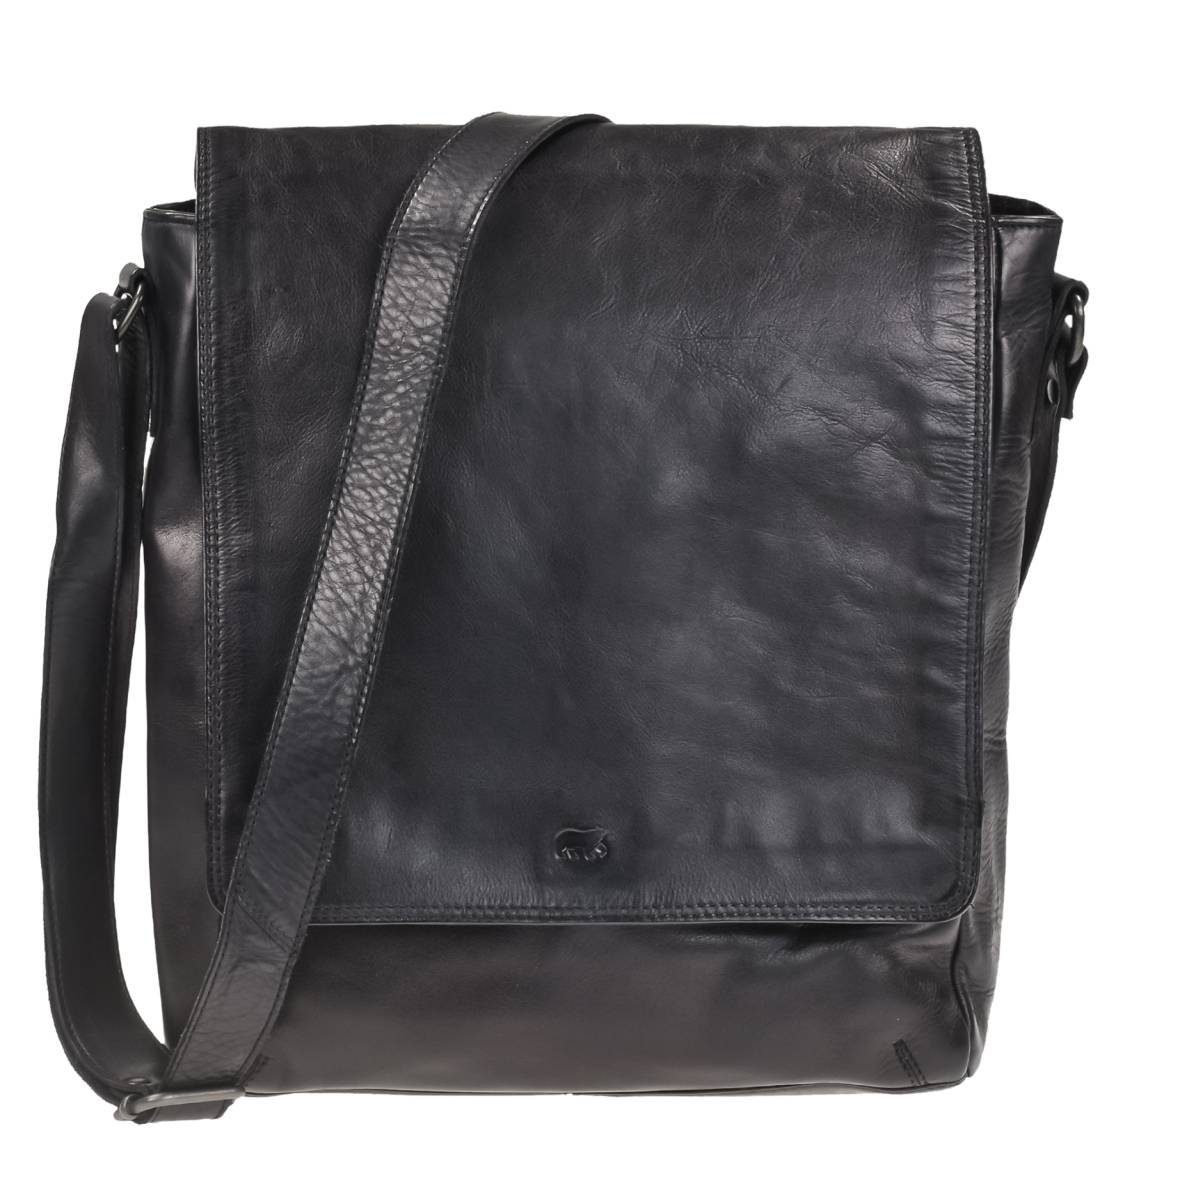 Bear Design Umhängetasche Dustin, Messenger Bag, Schultertasche 32x34cm, weiches knautschiges Leder black